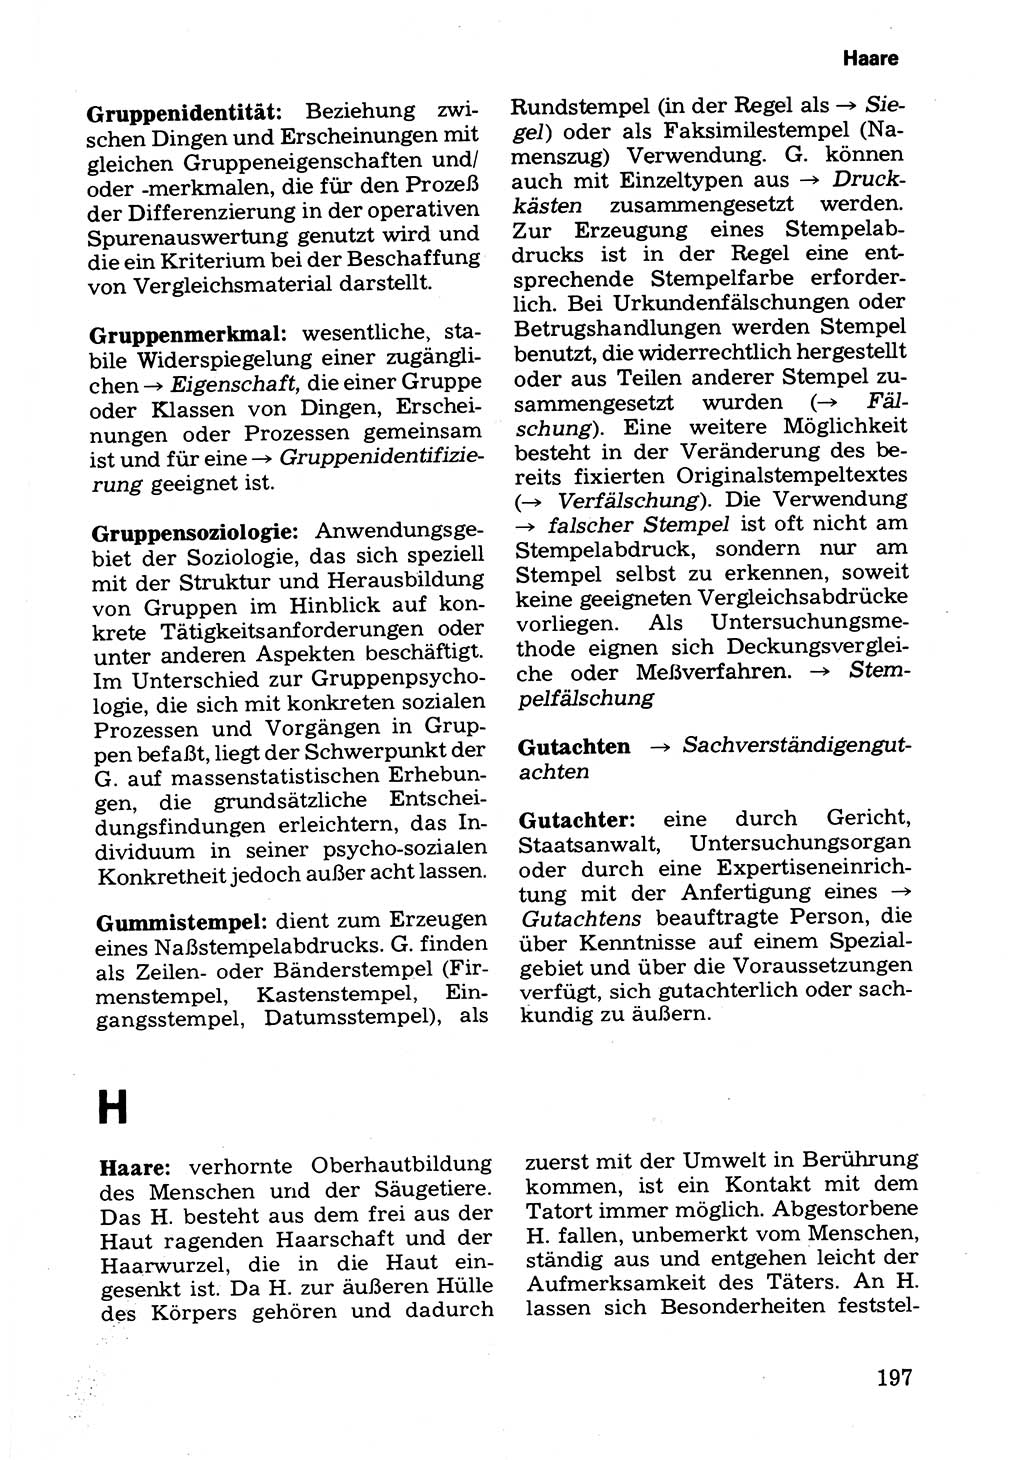 Wörterbuch der sozialistischen Kriminalistik [Deutsche Demokratische Republik (DDR)] 1981, Seite 197 (Wb. soz. Krim. DDR 1981, S. 197)